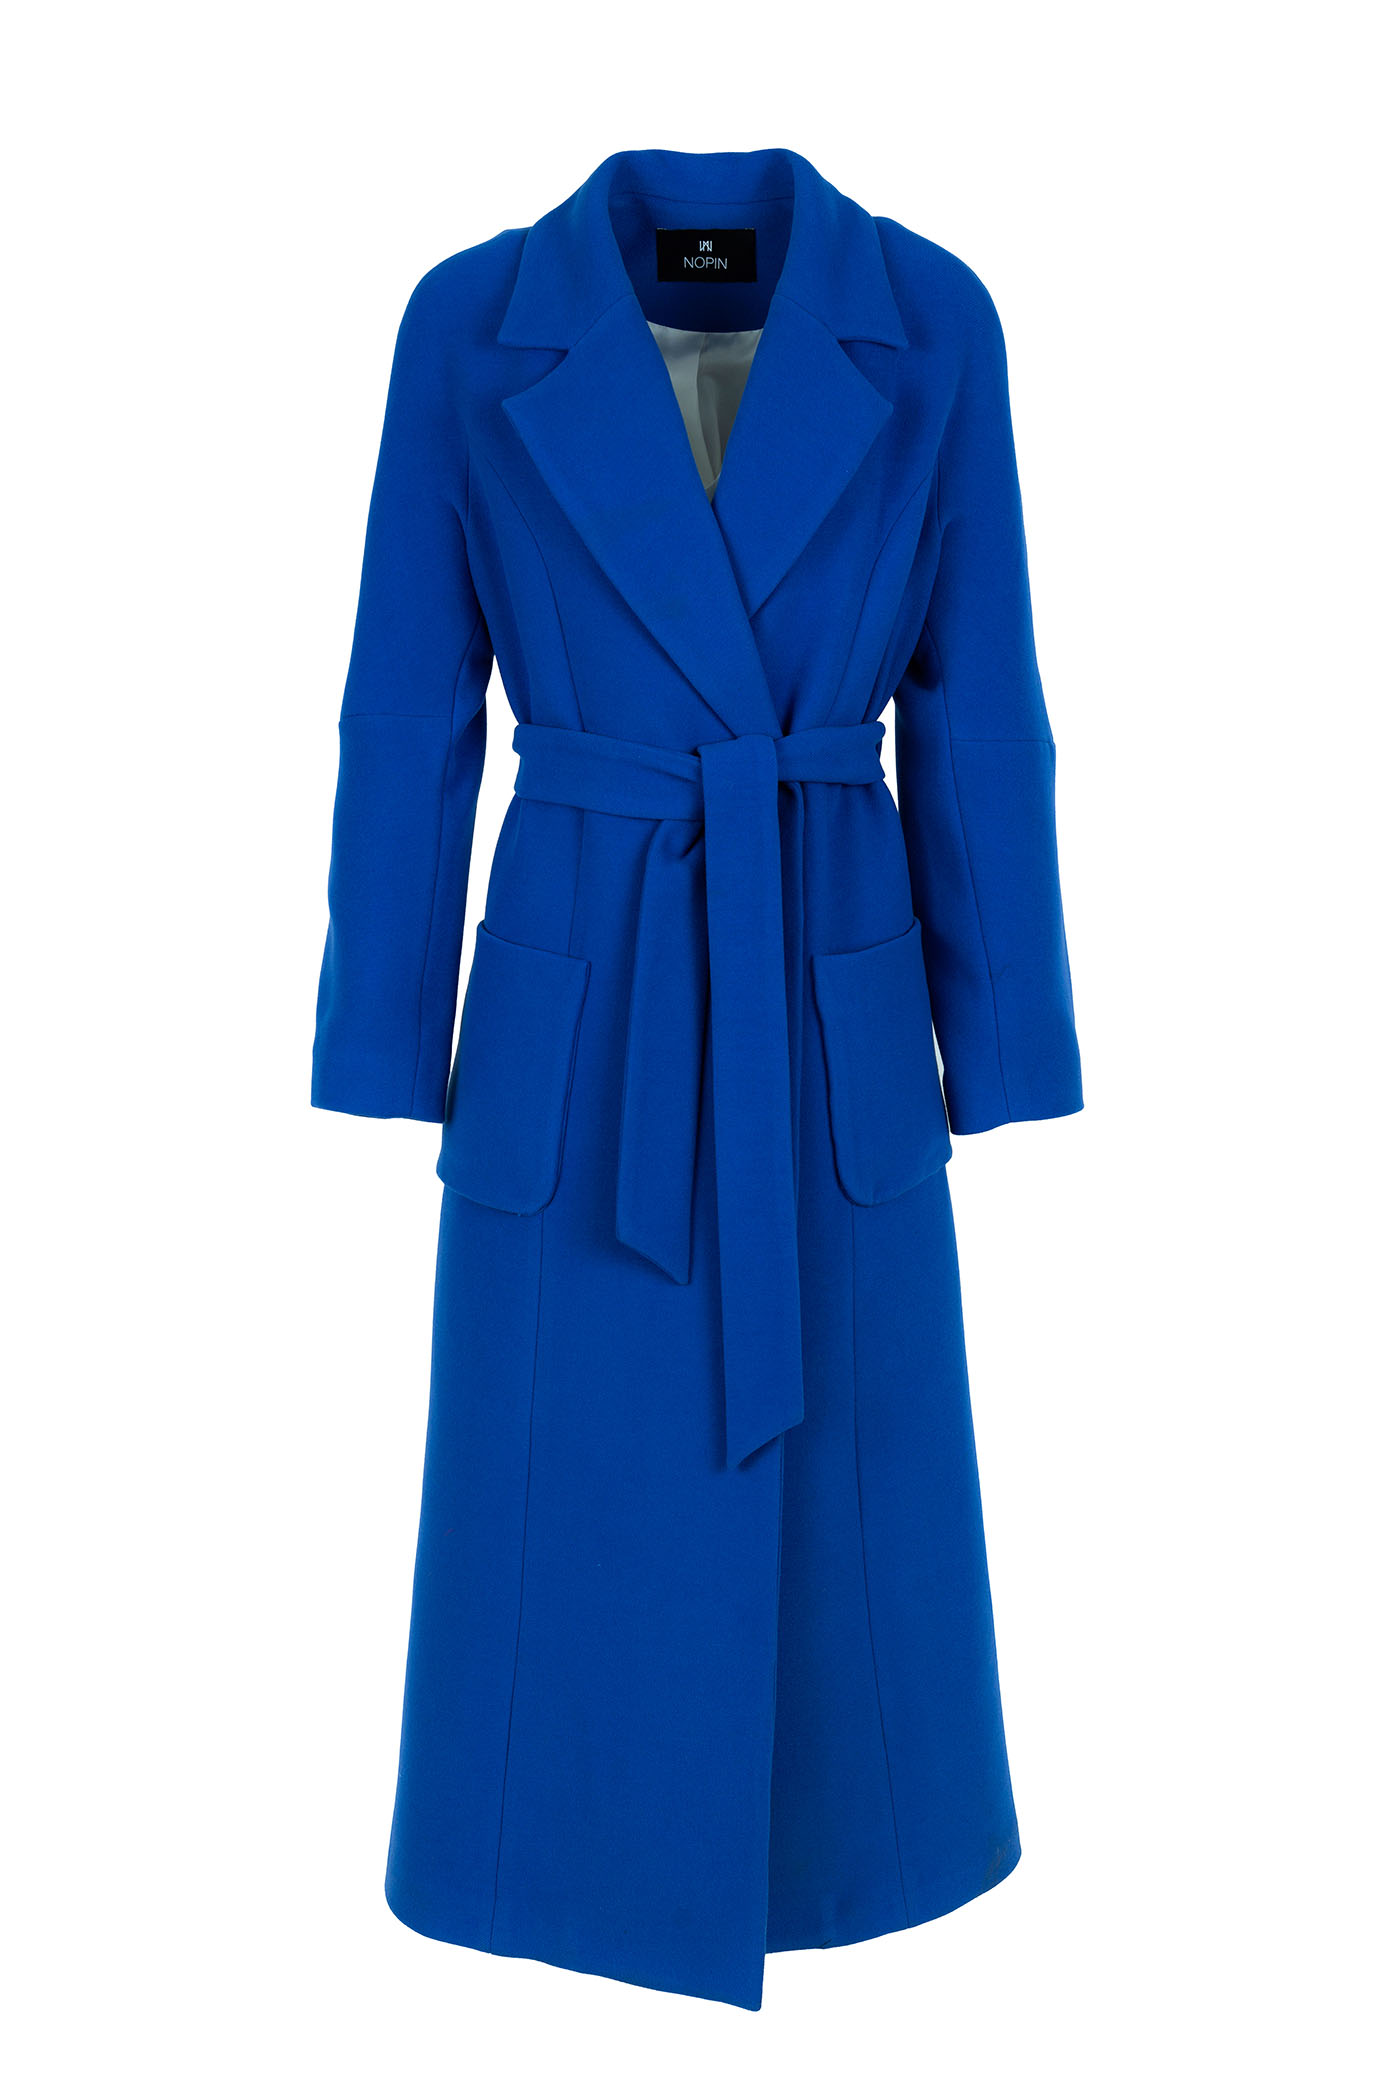 Nopin Blue Long Coat